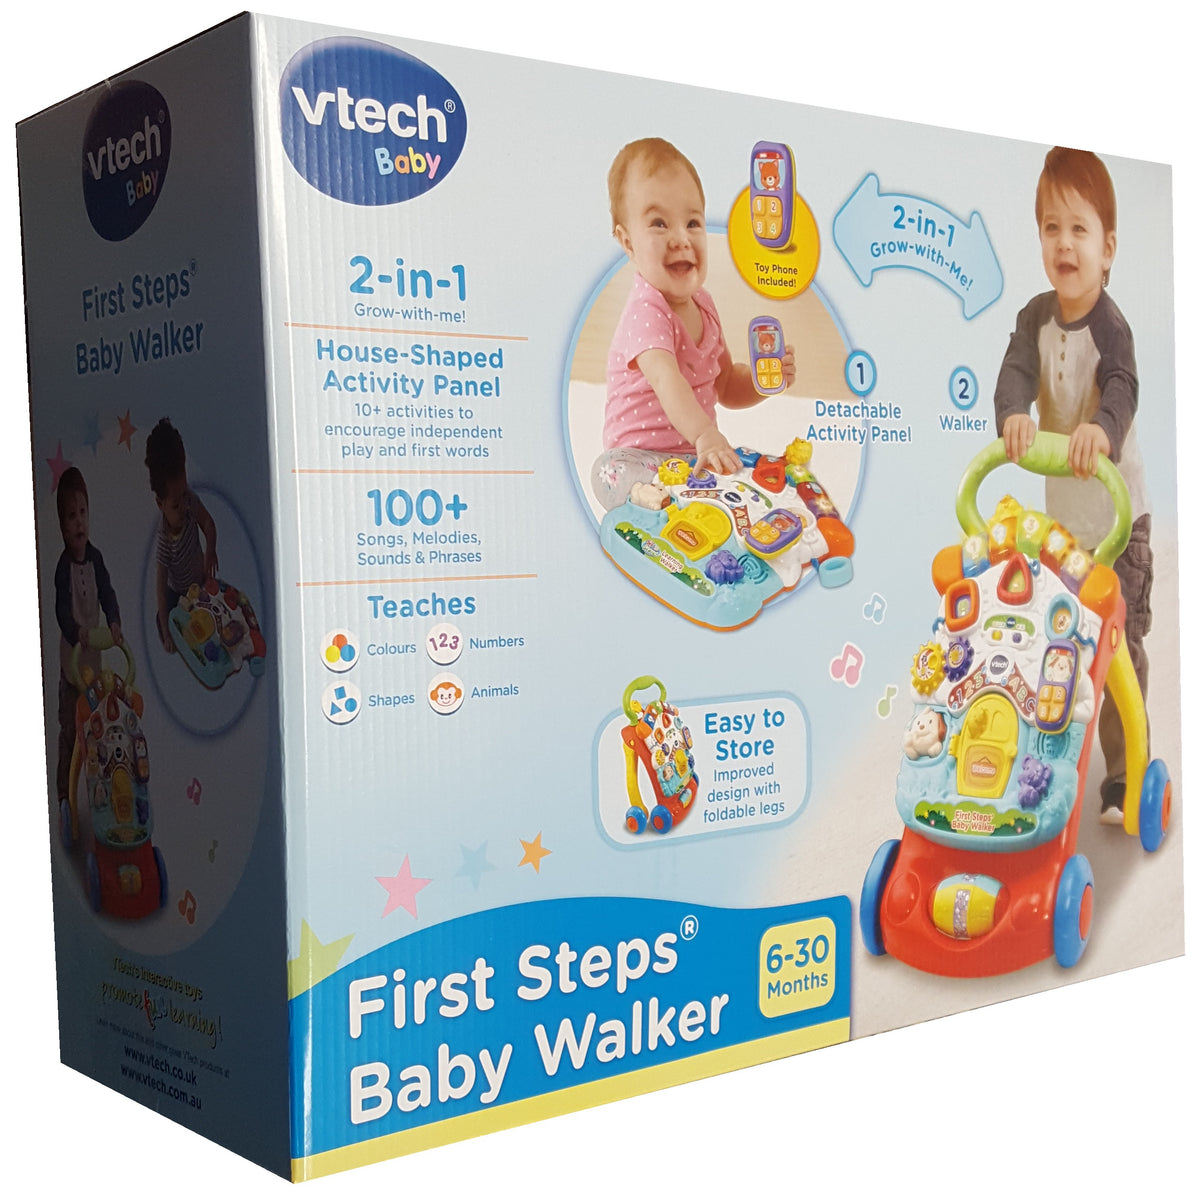 Vtech First Steps Baby Walker